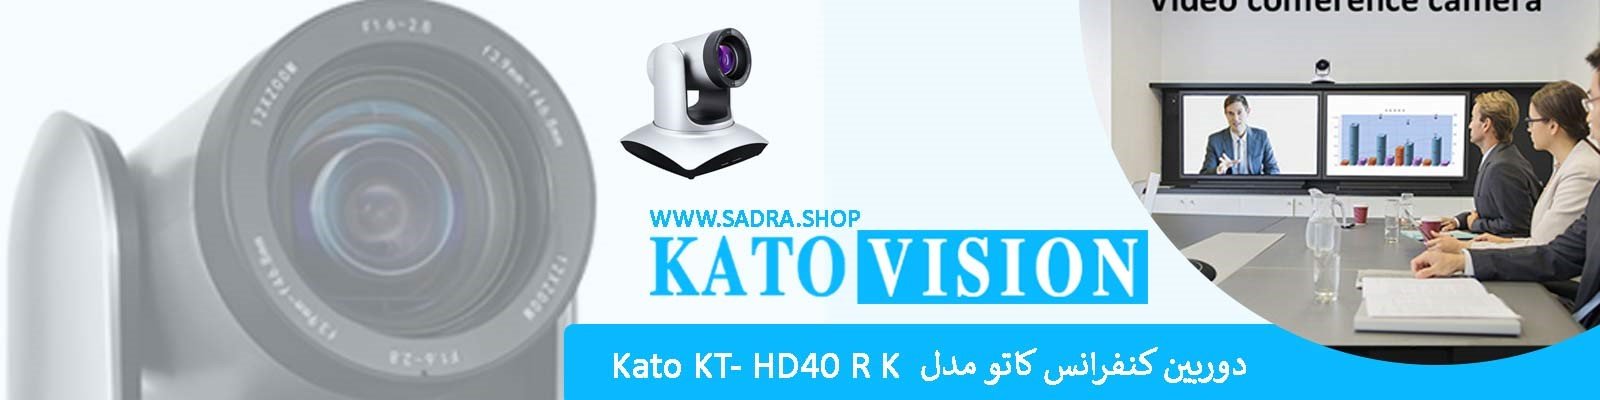 دوربین کنفرانس کاتو Kato KT- HD40RK